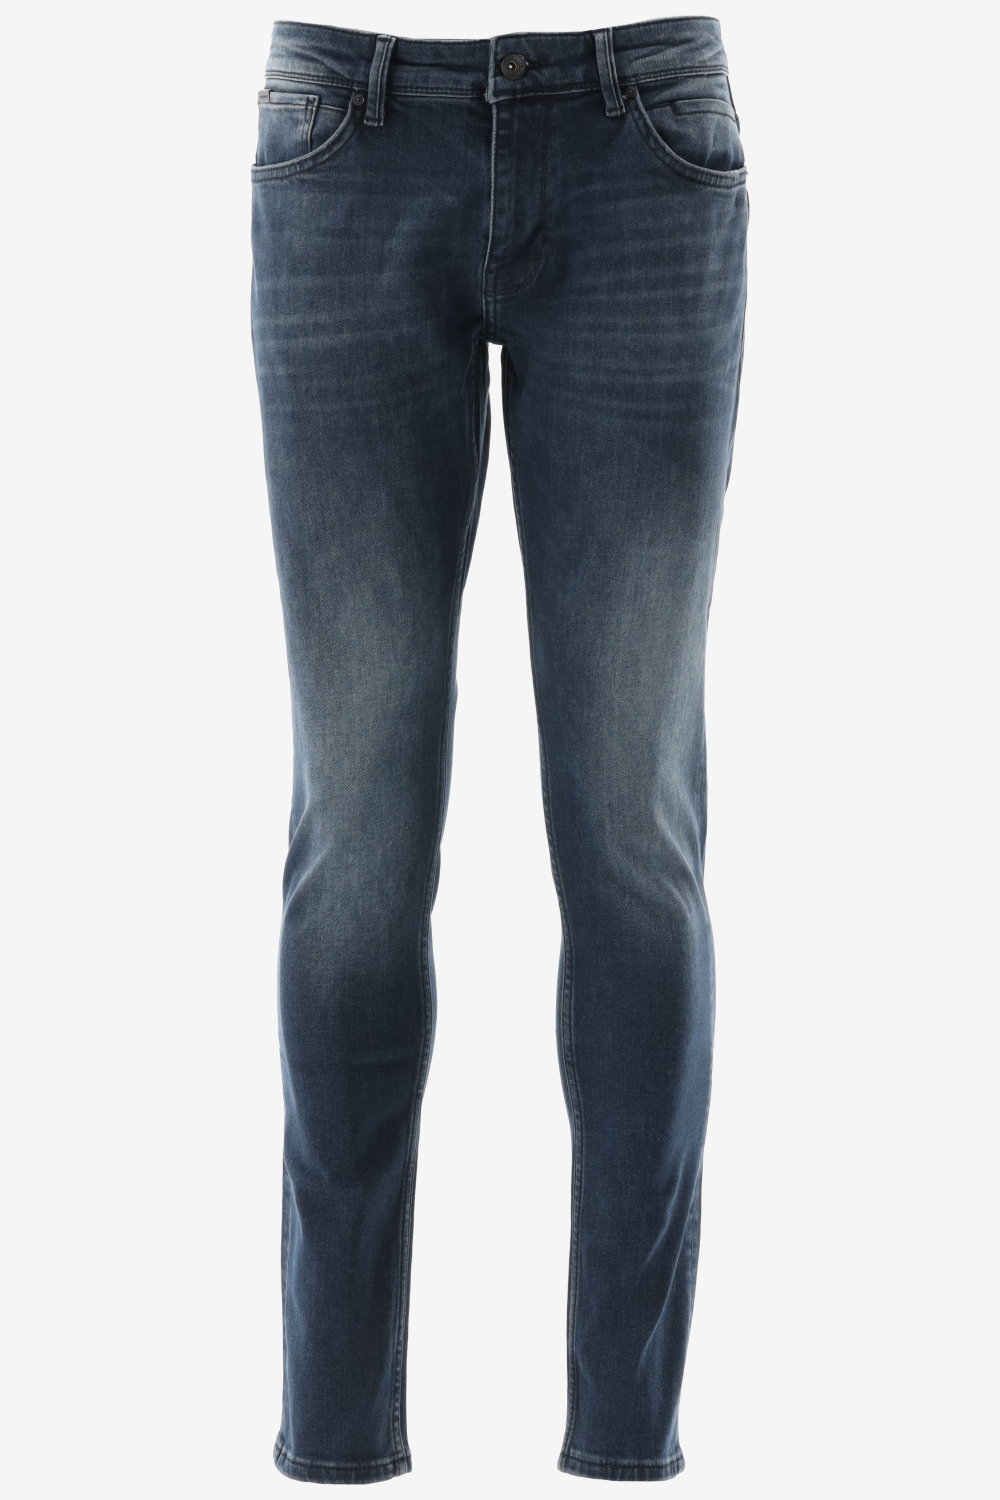 Purewhite - Jone Skinny Fit Heren Skinny Fit   Jeans  - Blauw - Maat 26